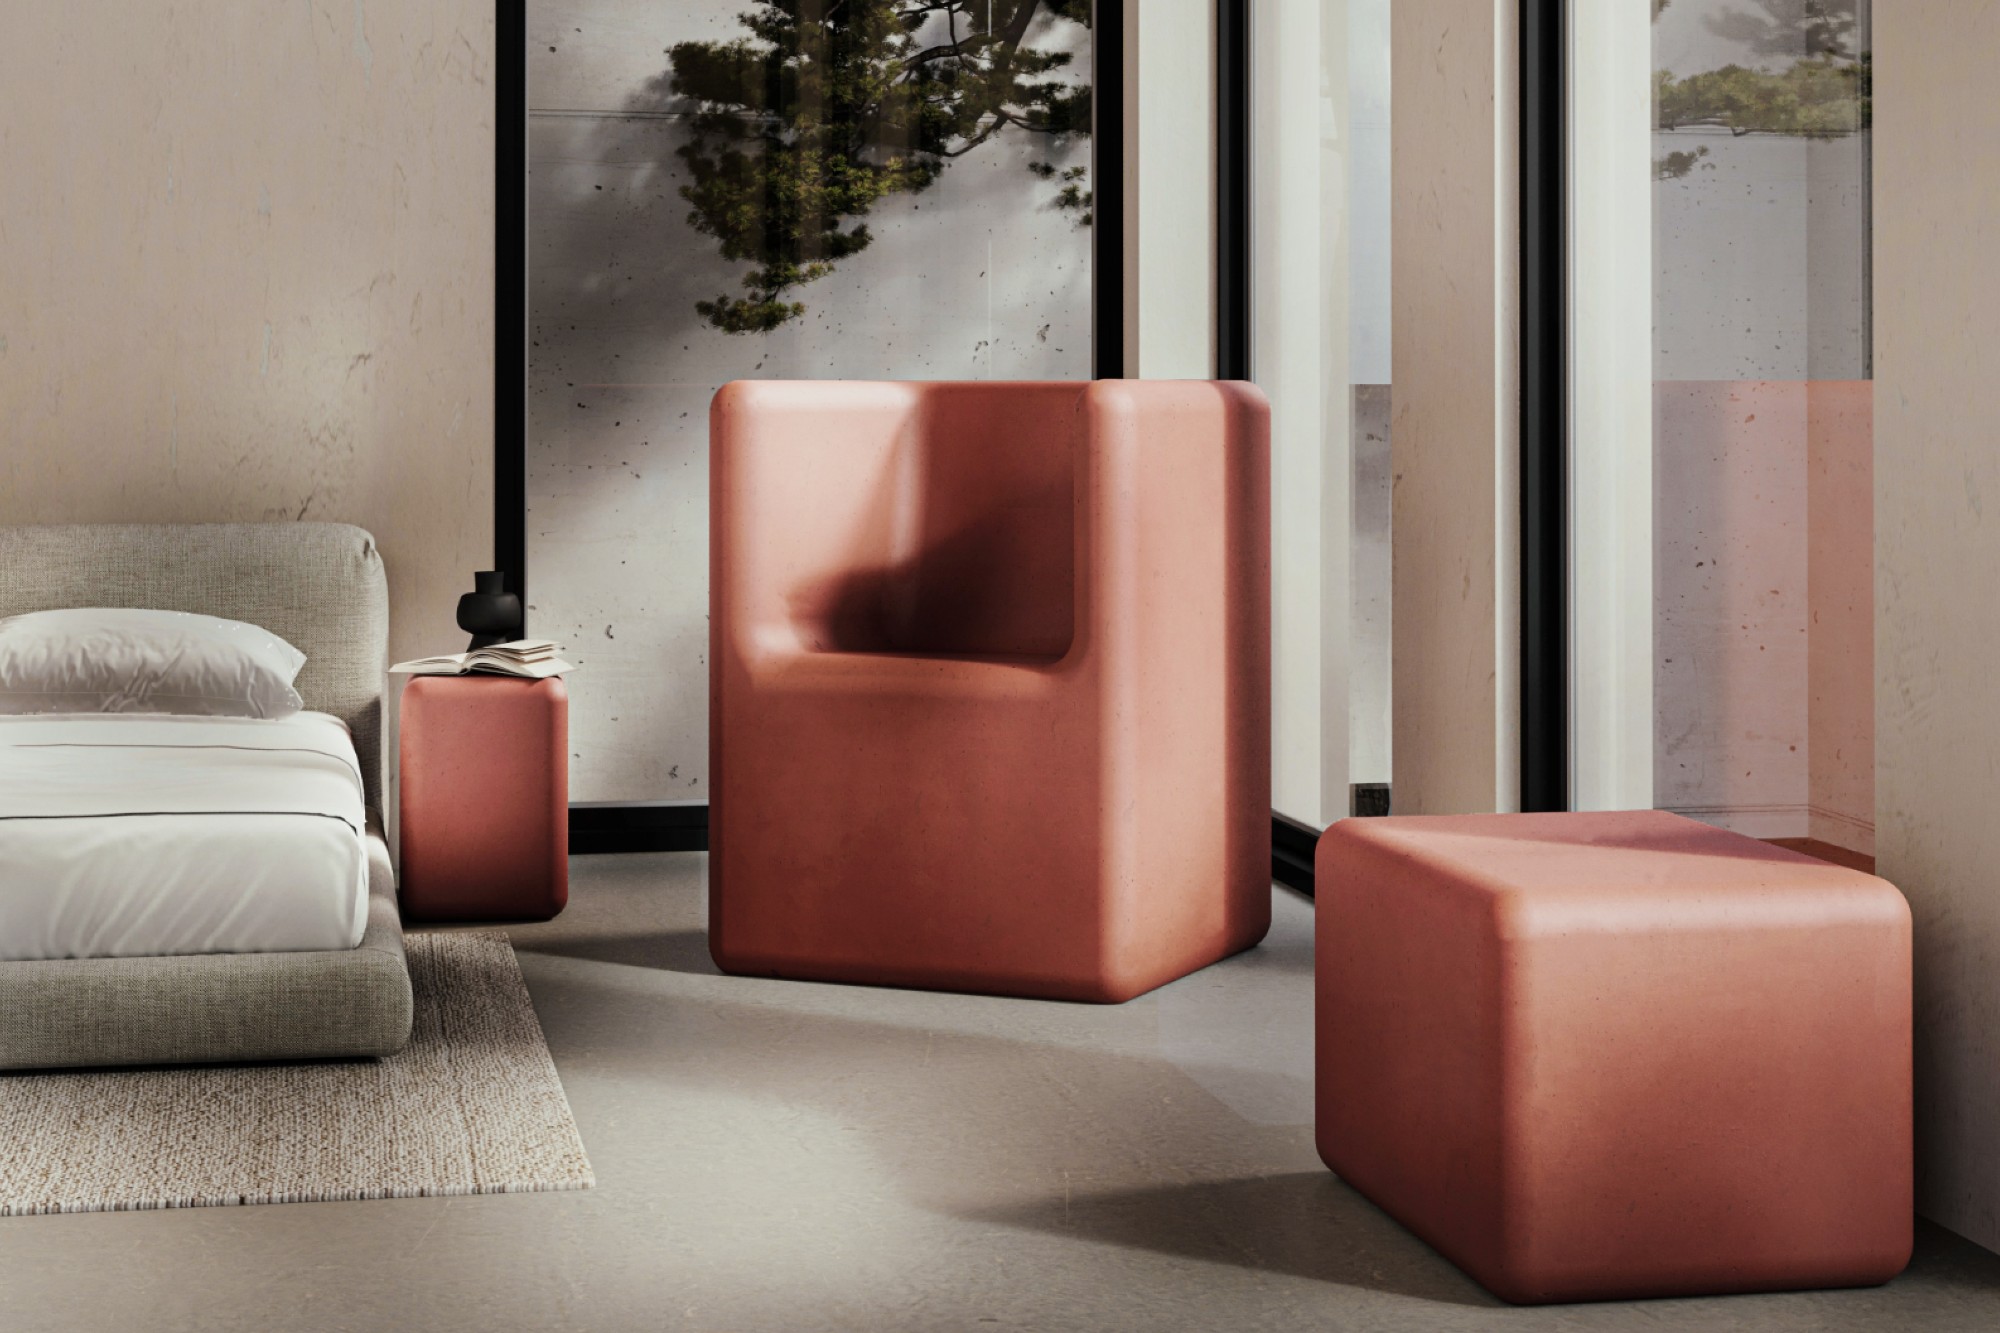 Nuance Studio introduces concrete furniture series